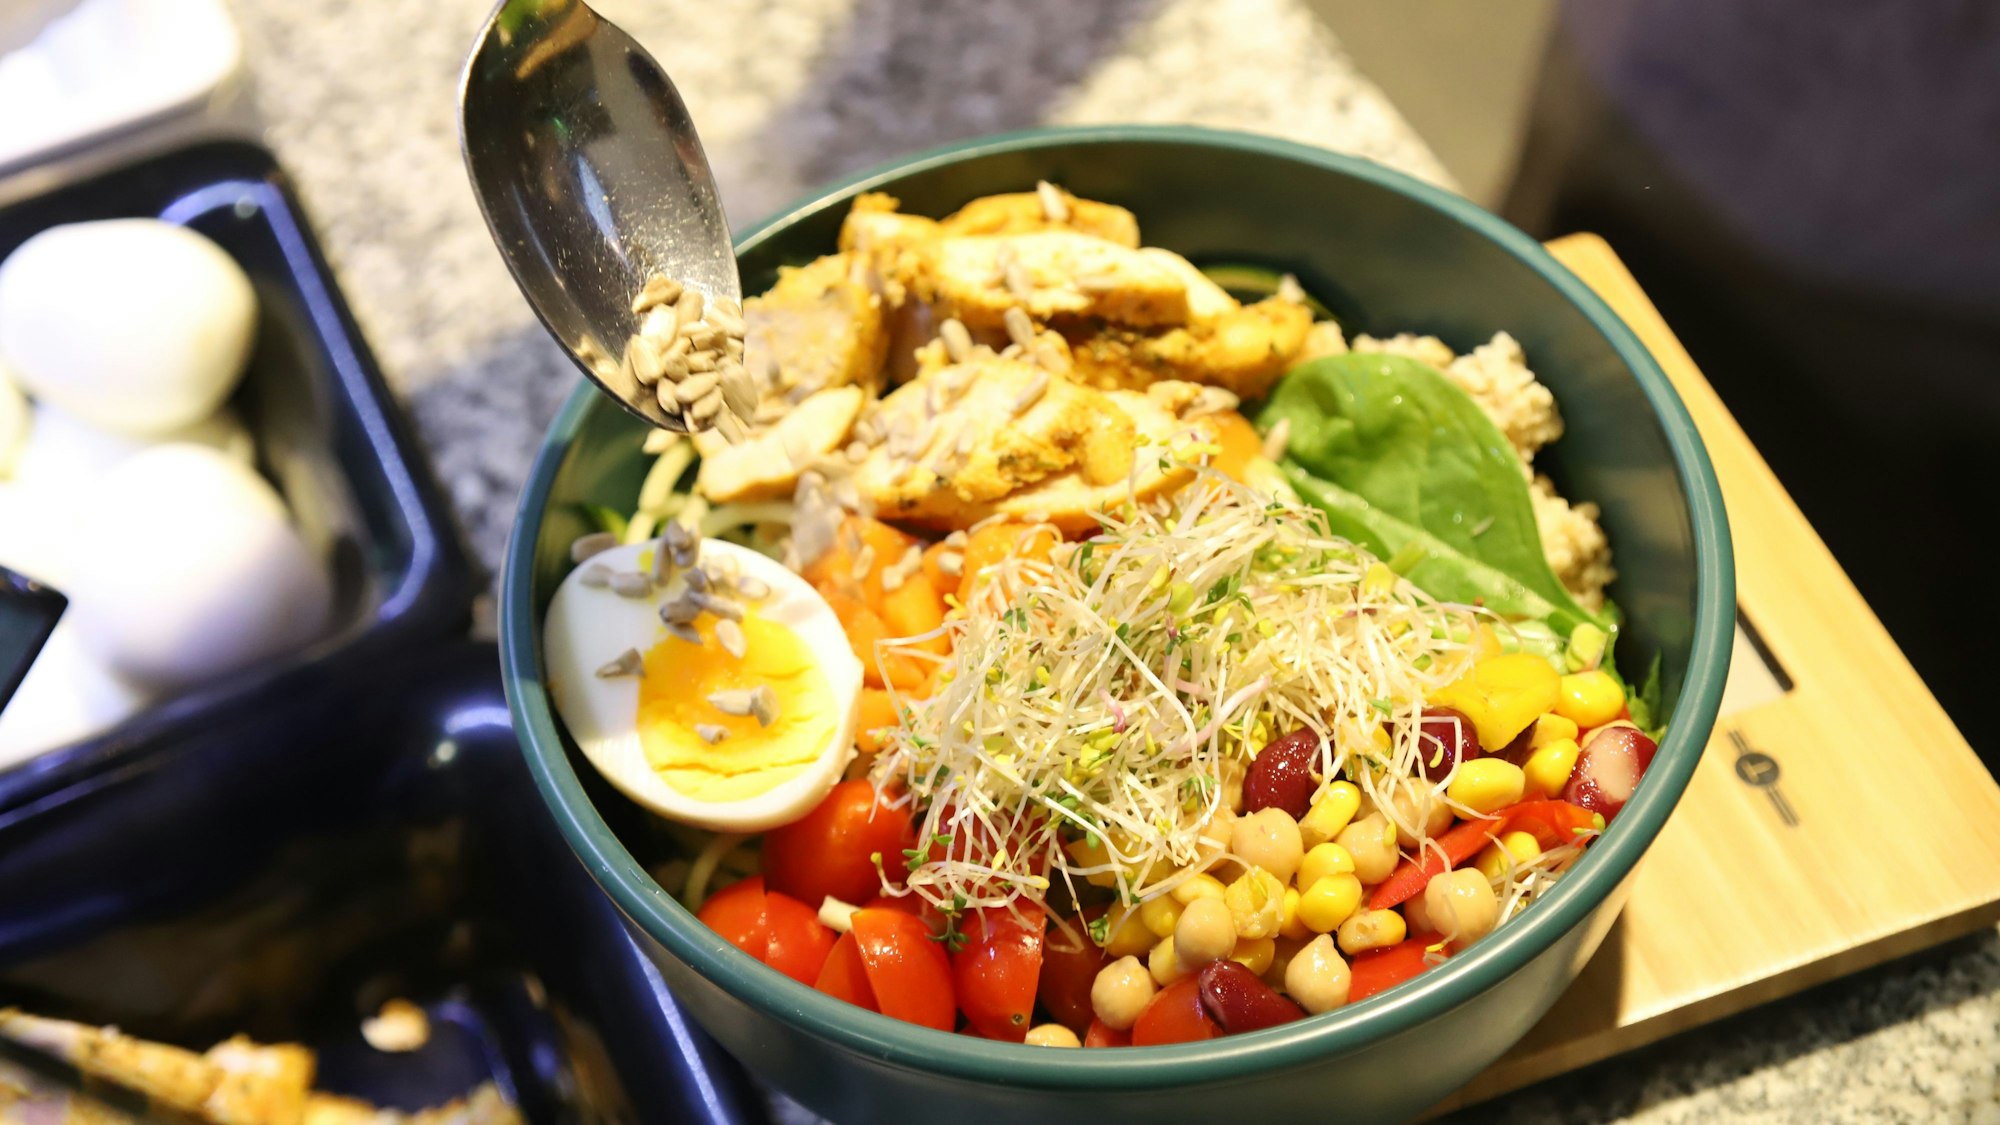 Eine Schüssel mit einem halben gekochtem Ei, Mais, Bohnen, Tomaten und weiterem Salat.